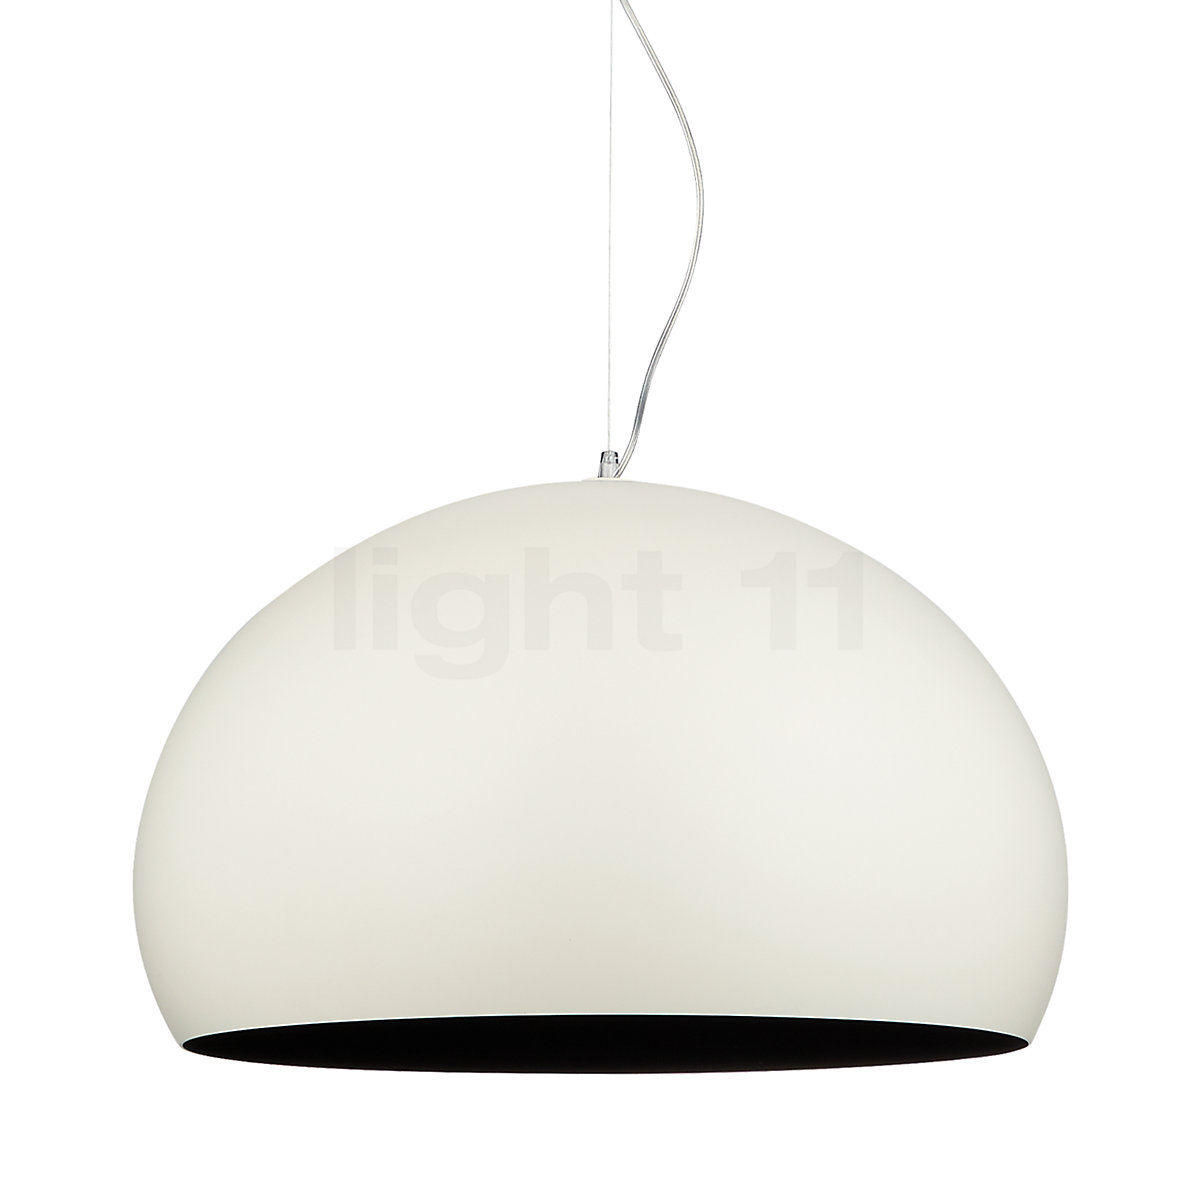 Kartell Hanglamp kopen bij light11.nl